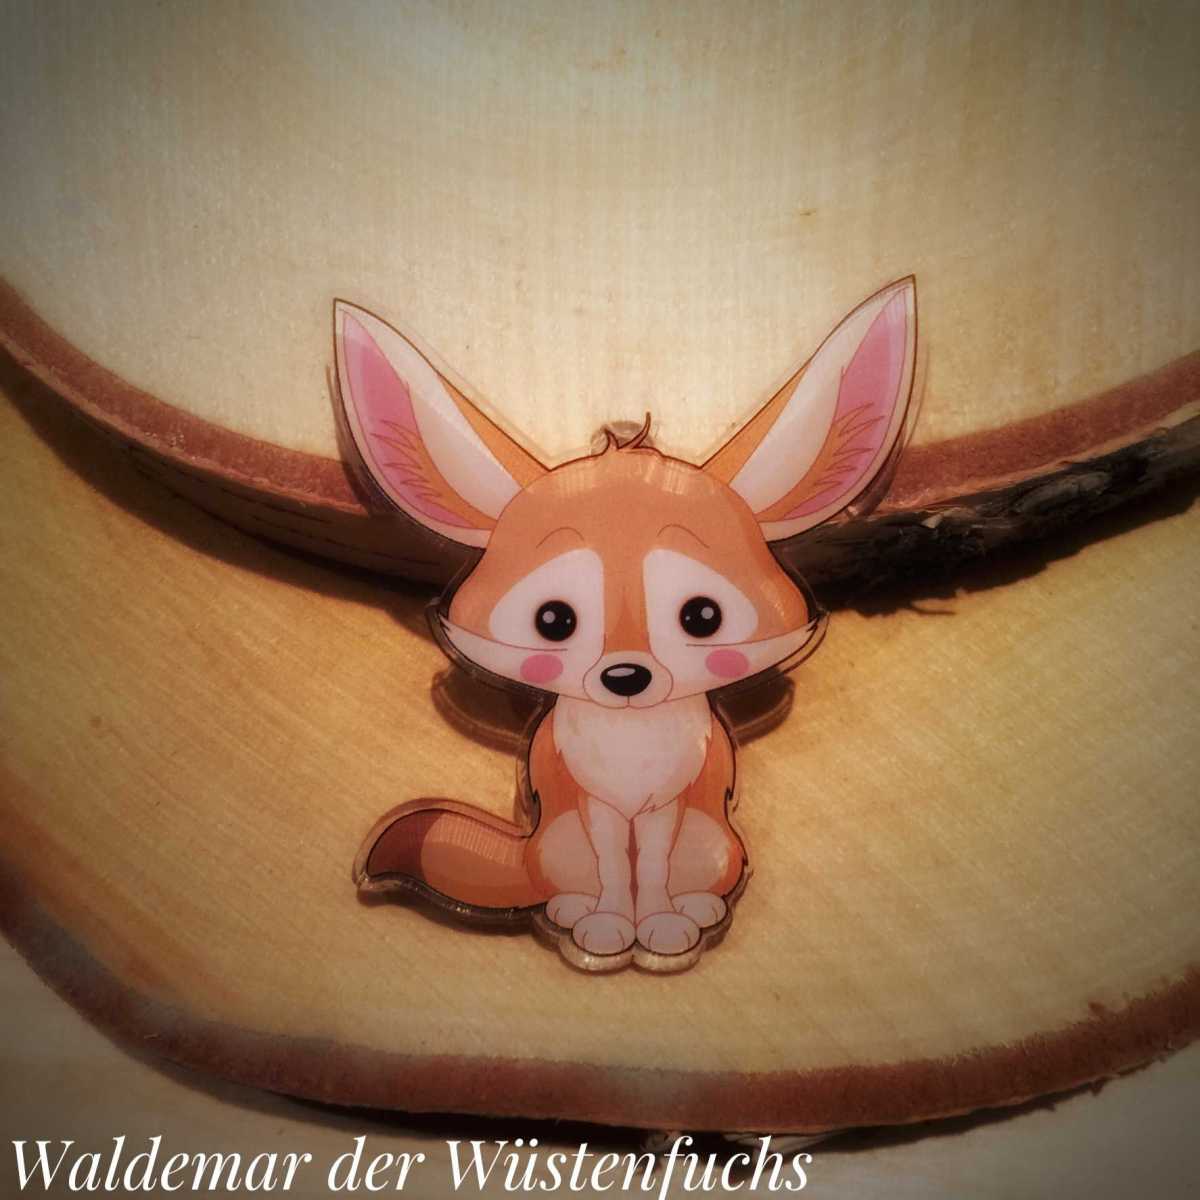 "Waldemar der Wüstenfuchs"